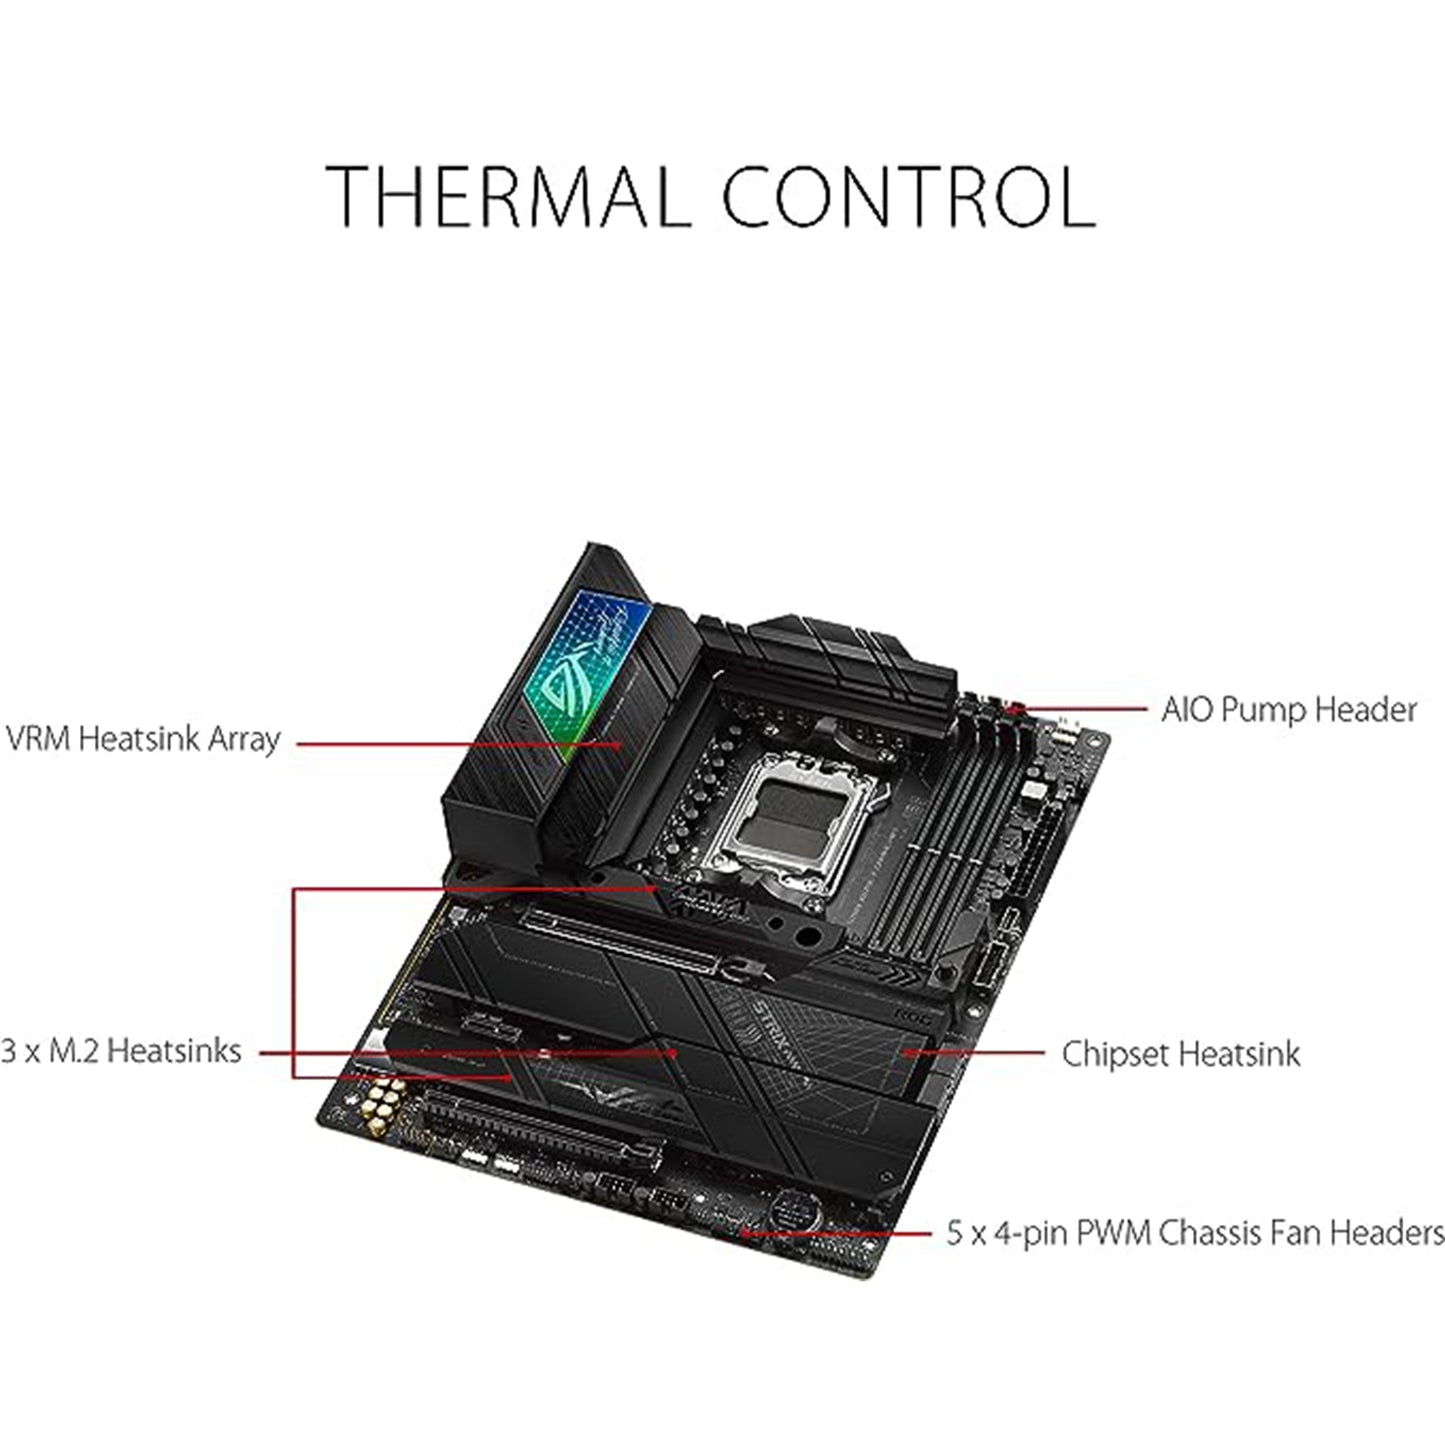 ASUS ROG Strix X670E-F Gaming WIFI6E مقبس AM5 (LGA 1718) Ryzen 7000 Gaming Motherboard (PCIe 5.0، DDR5،16 + 2 مراحل طاقة، أربع فتحات M.2 مع مبددات حرارة، USB 3.2 Gen 2x2، AI Cooling II، وAura Sync ) 